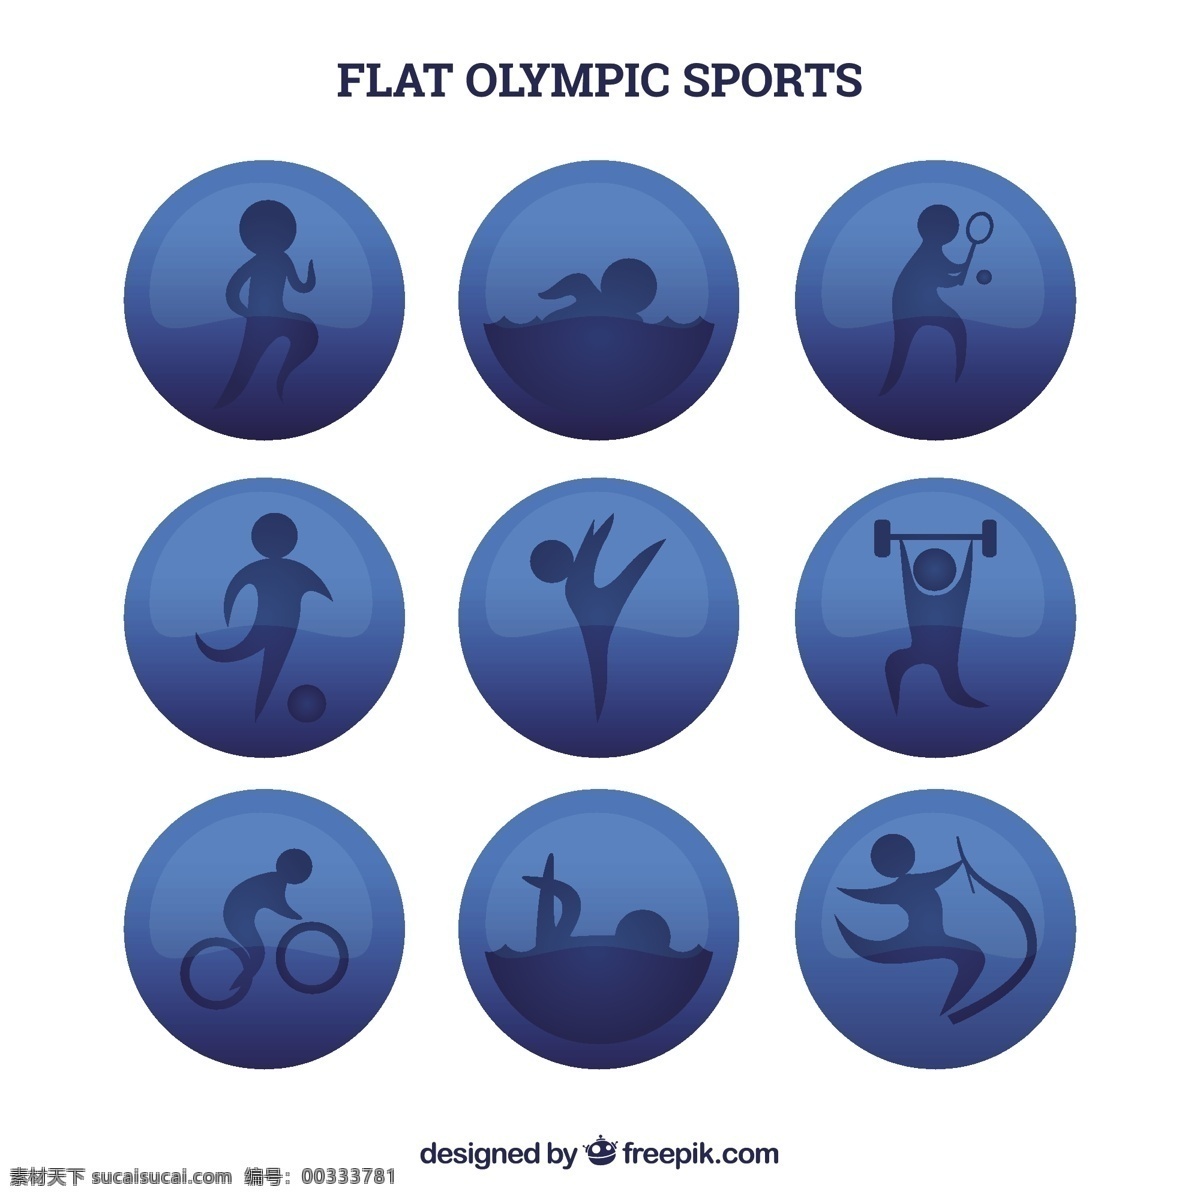 平板 奥林匹克运动 圈 体育 健身 健康 网球 运动 跑步 训练 游泳 游戏 比赛 生活方式 国际 运动员 锻炼